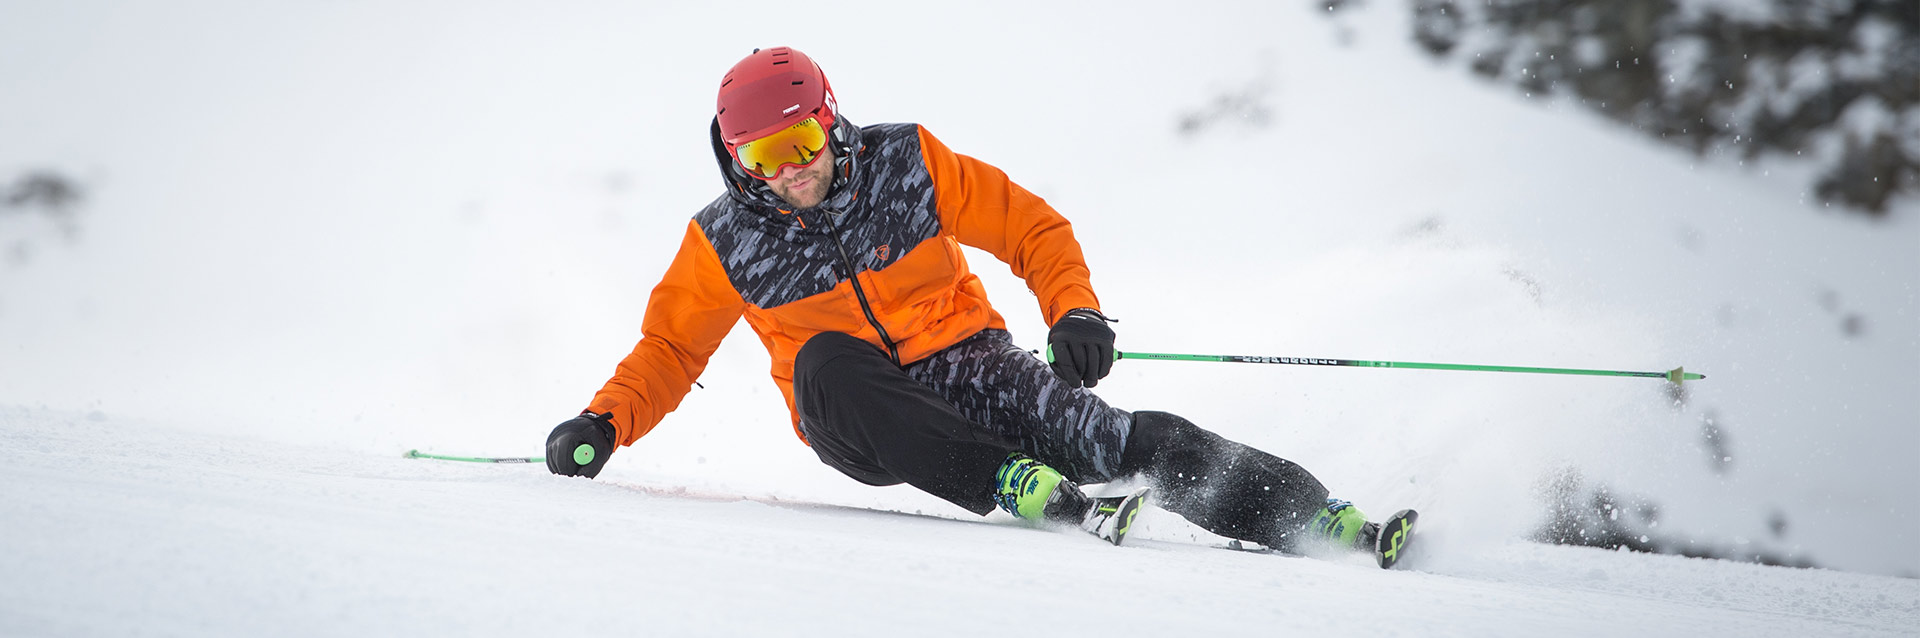 ZIENER Merfy JR - ValetMont - SnowUniverse, équipement outdoor et skis